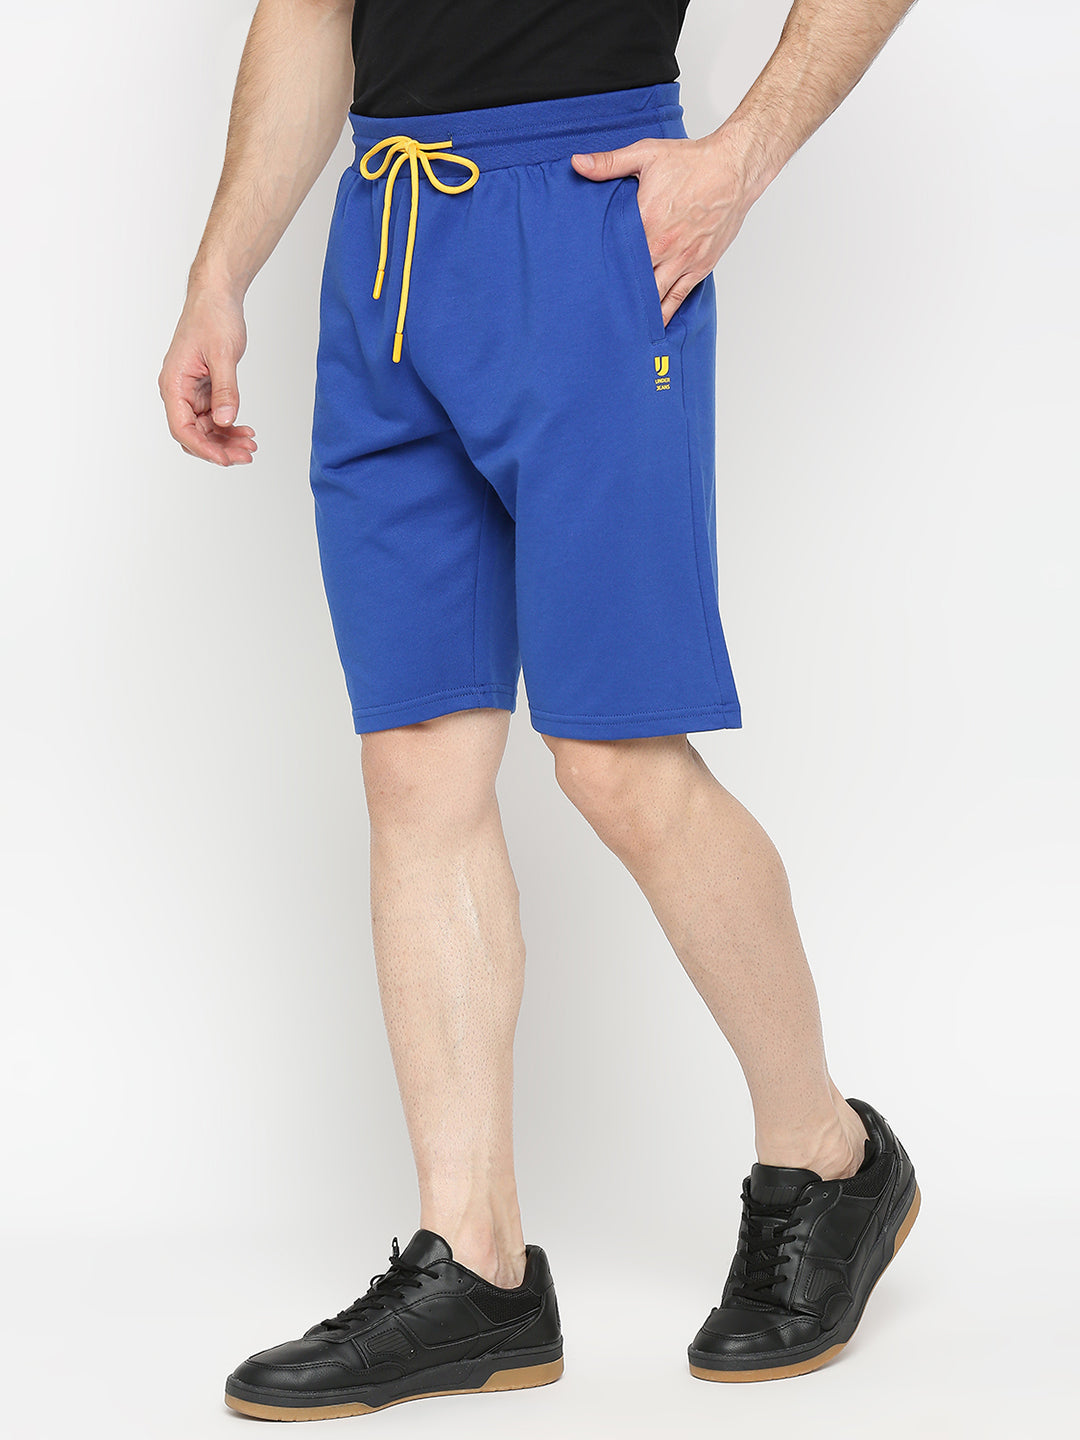 Men Premium Royal blue Cotton Blend Shorts - UnderJeans by Spykar